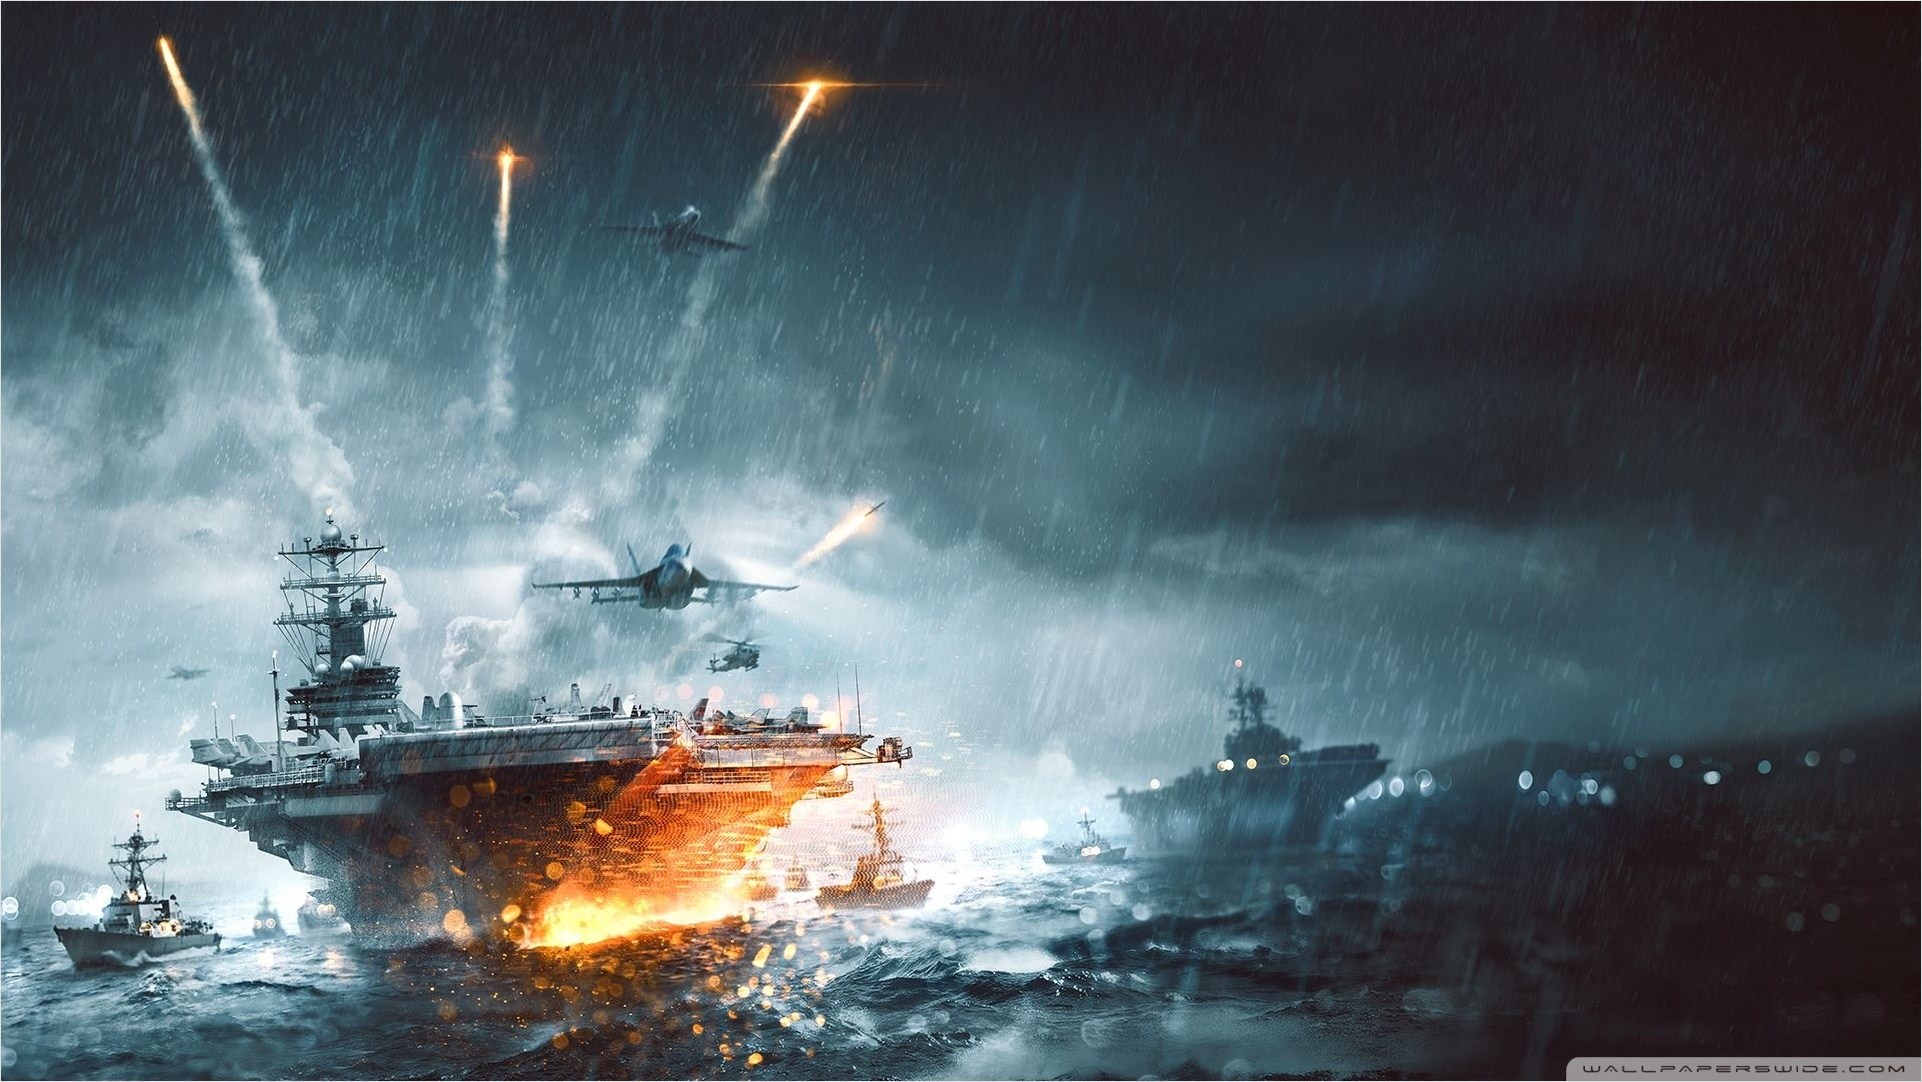 Battlefield 4 Naval Strike Wallpaper 1920×1080 - Battlefield 4 Naval Strike , HD Wallpaper & Backgrounds